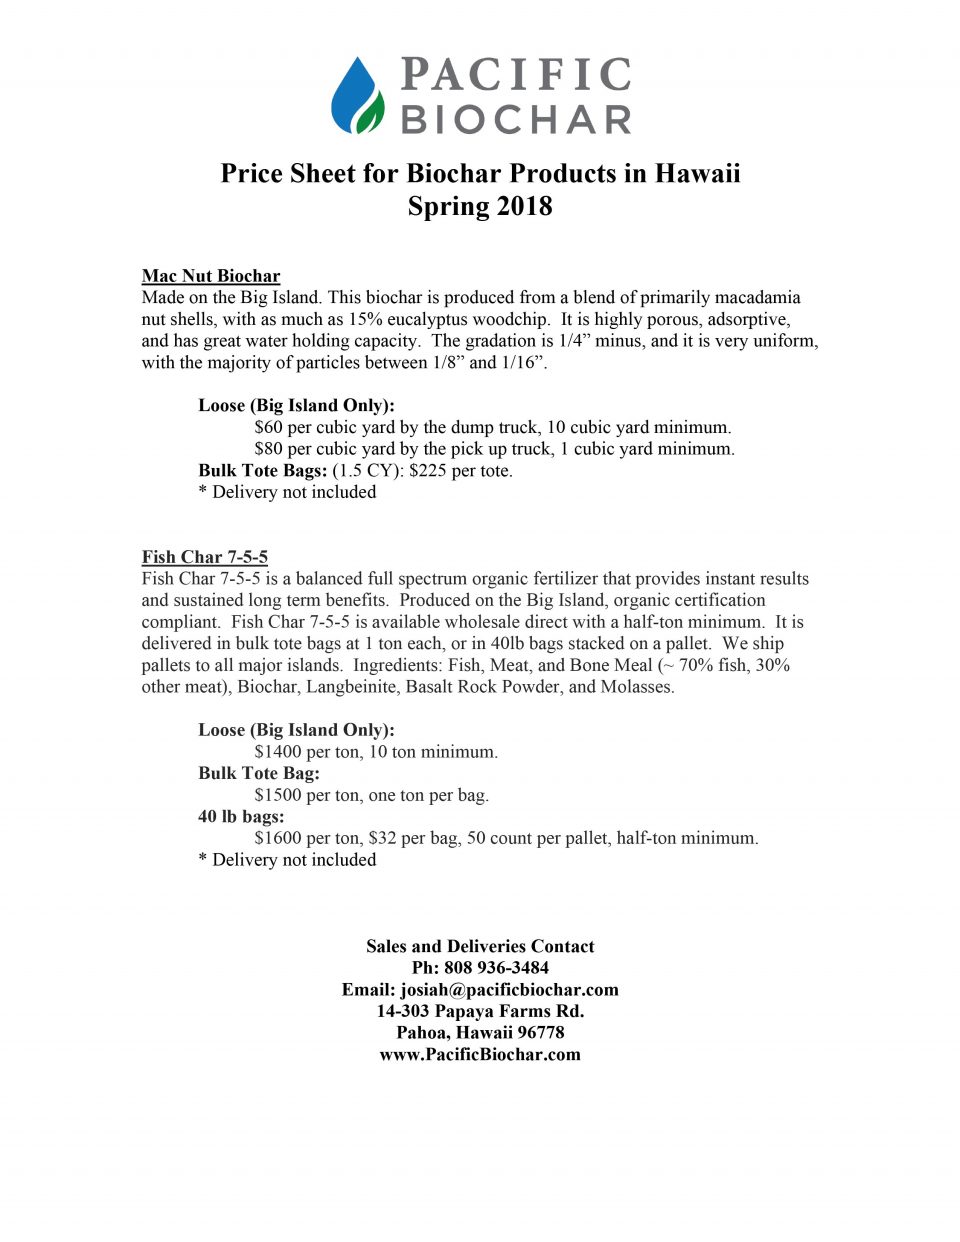 biochar price sheet for Hawaii